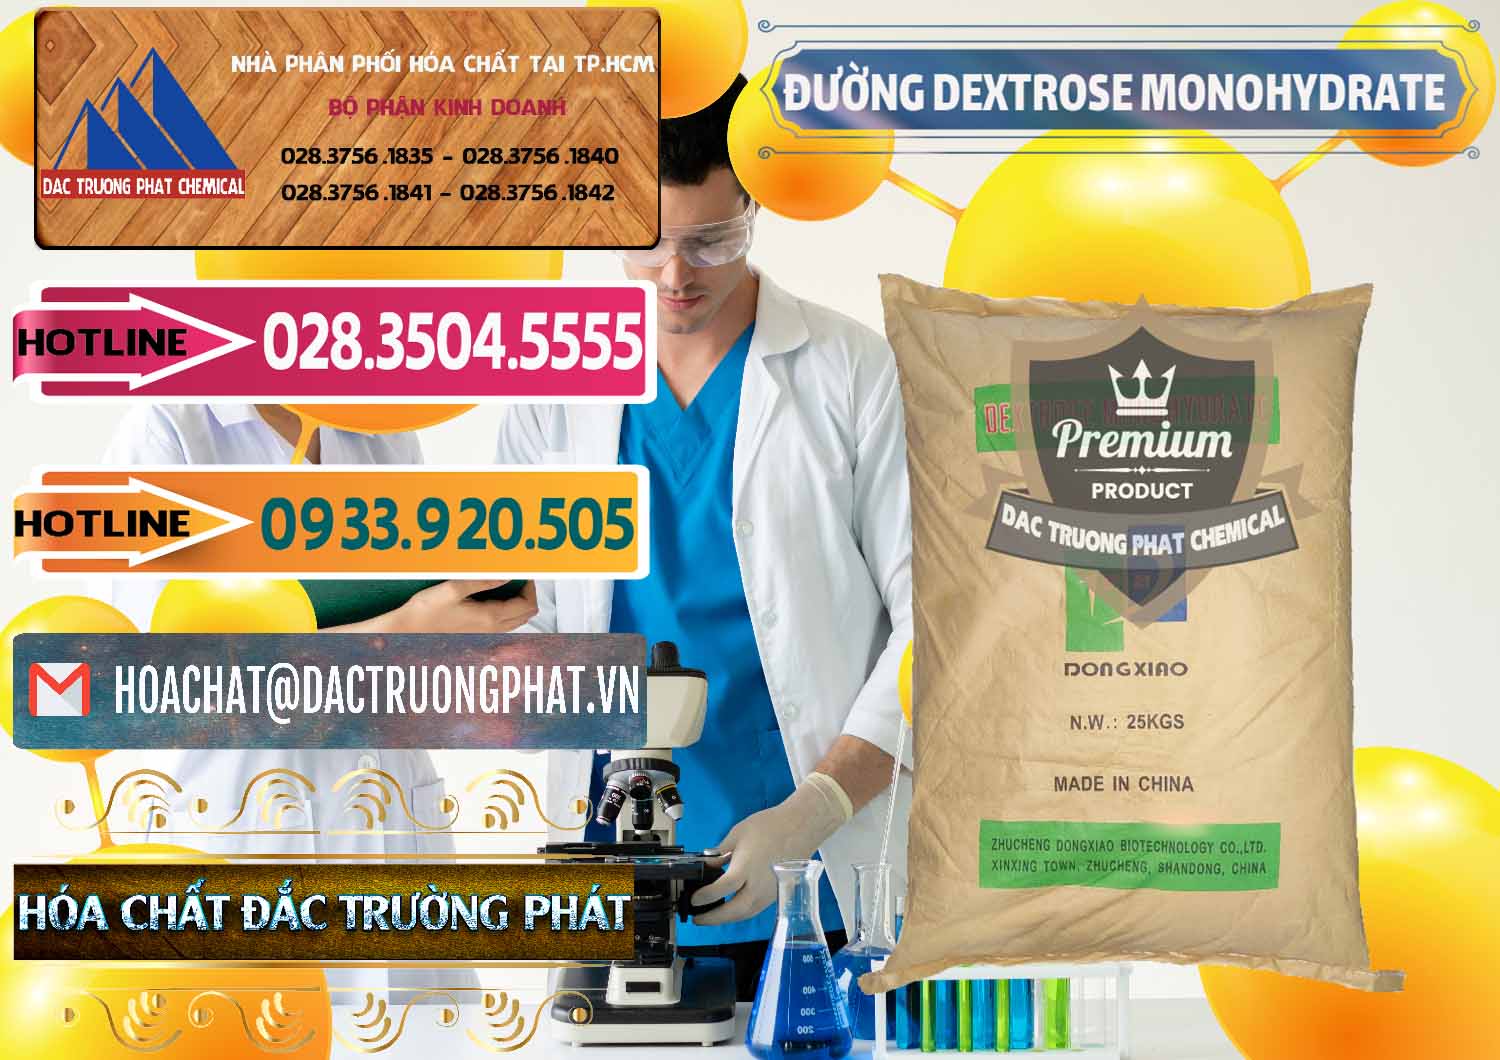 Công ty kinh doanh và bán Đường Dextrose Monohydrate Food Grade Dongxiao Trung Quốc China - 0063 - Nhà cung cấp & phân phối hóa chất tại TP.HCM - dactruongphat.vn